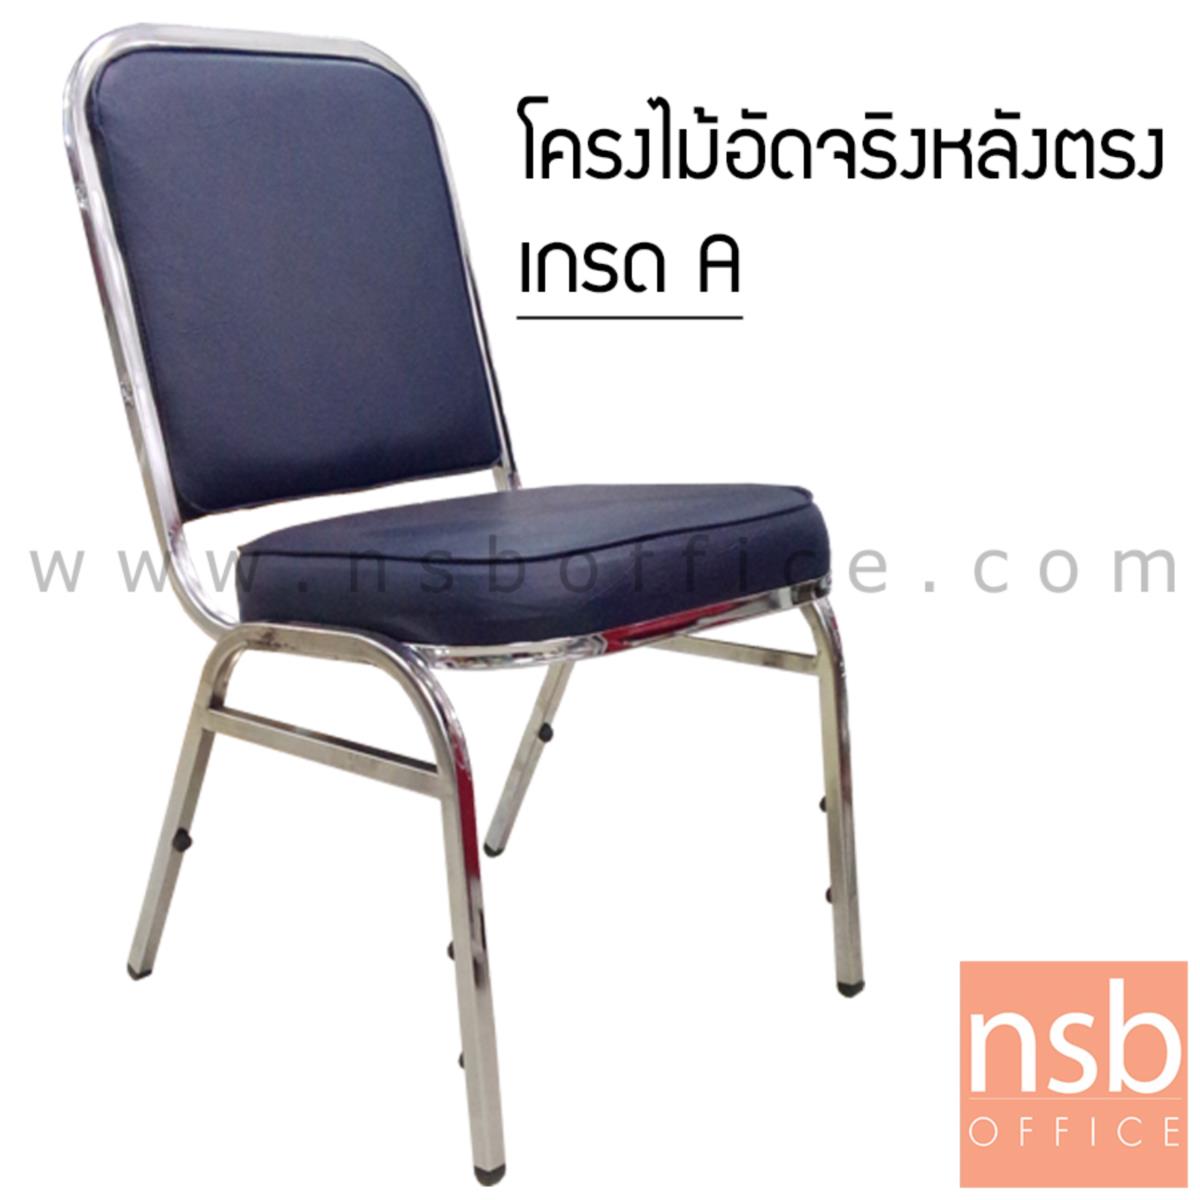 B05A130:เก้าอี้อเนกประสงค์จัดเลี้ยง  ขนาด 88H cm. ขาเหล็ก 